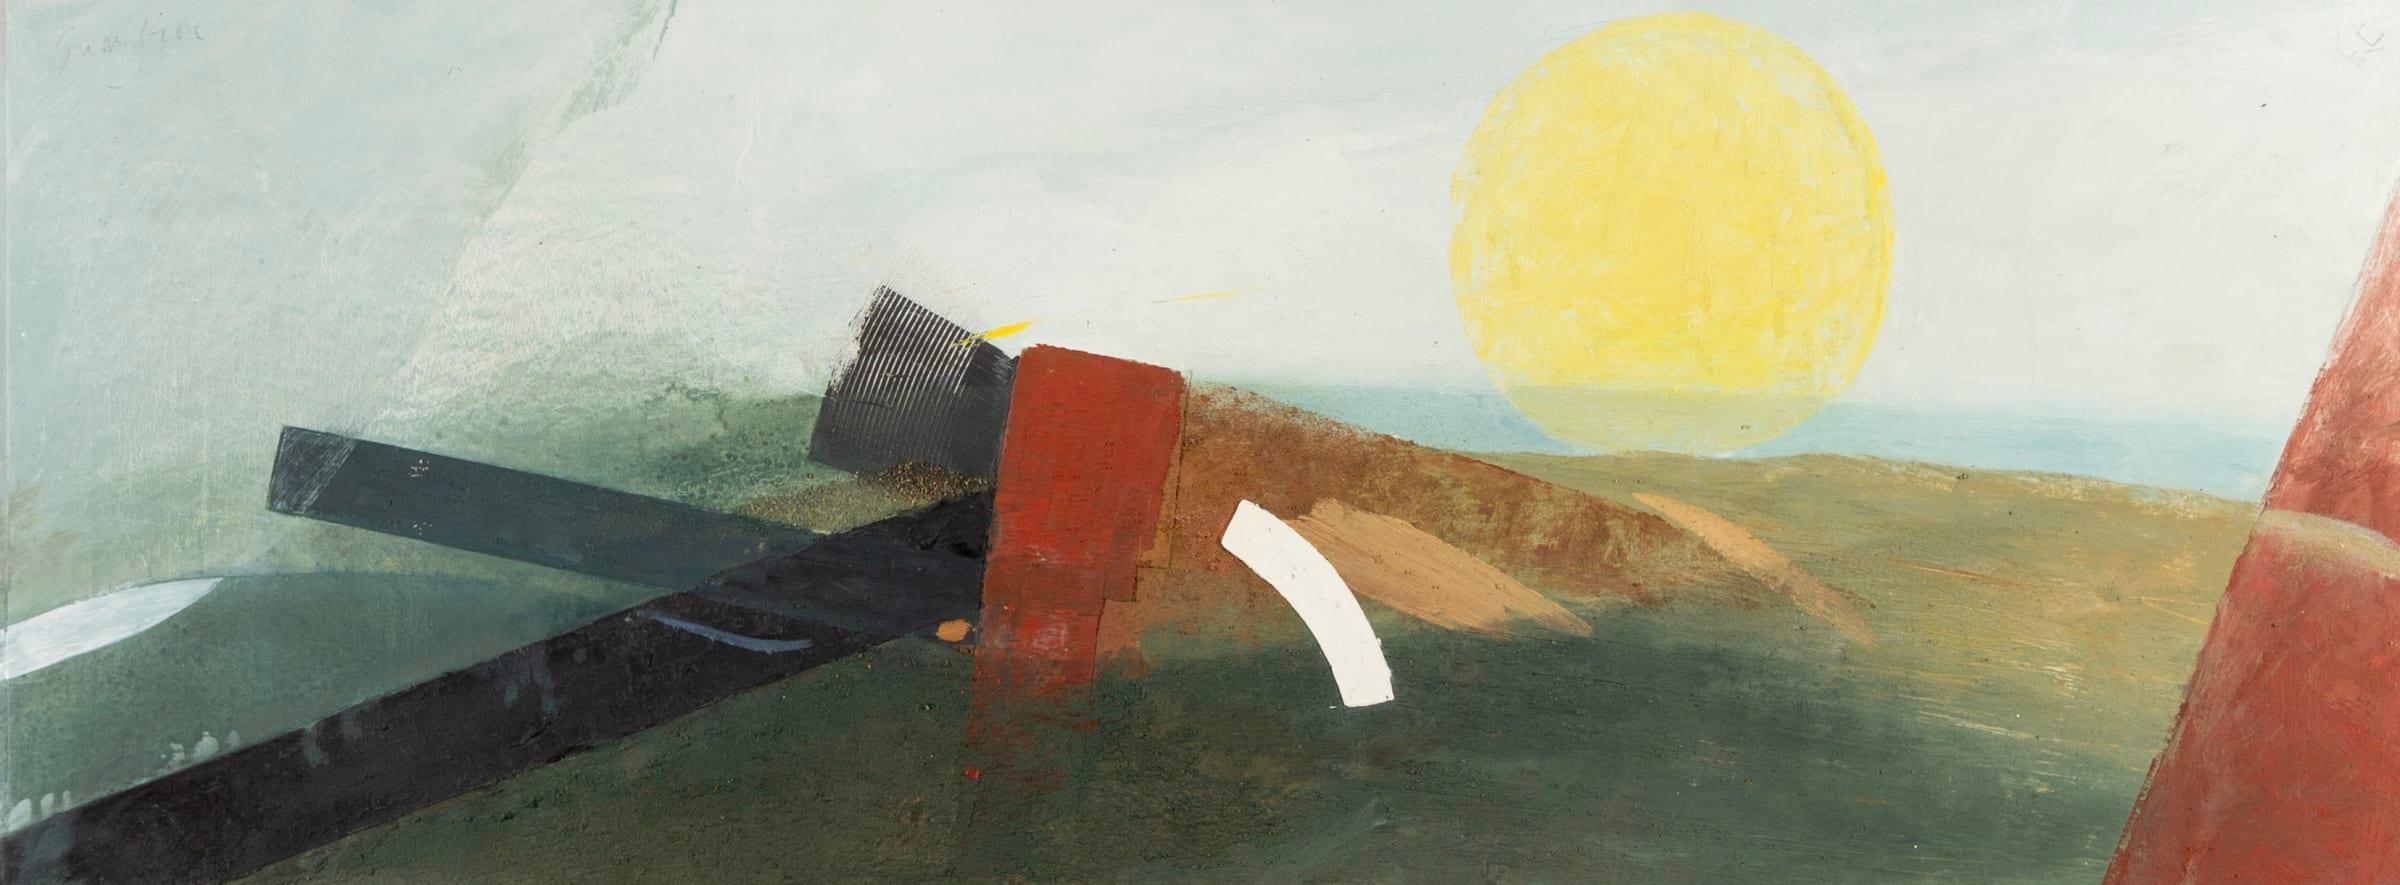 Sun Tide, Öl auf Karton Gemälde von Keith Purser Geb. 1944, 2015

Zusätzliche Informationen:
Medium: Öl und Sand auf Karton
Abmessungen: 44,5 x 118 cm
17 1/2 x 46 1/2 in
Signiert, betitelt und datiert

Keith Purser lebt und arbeitet am Rande der